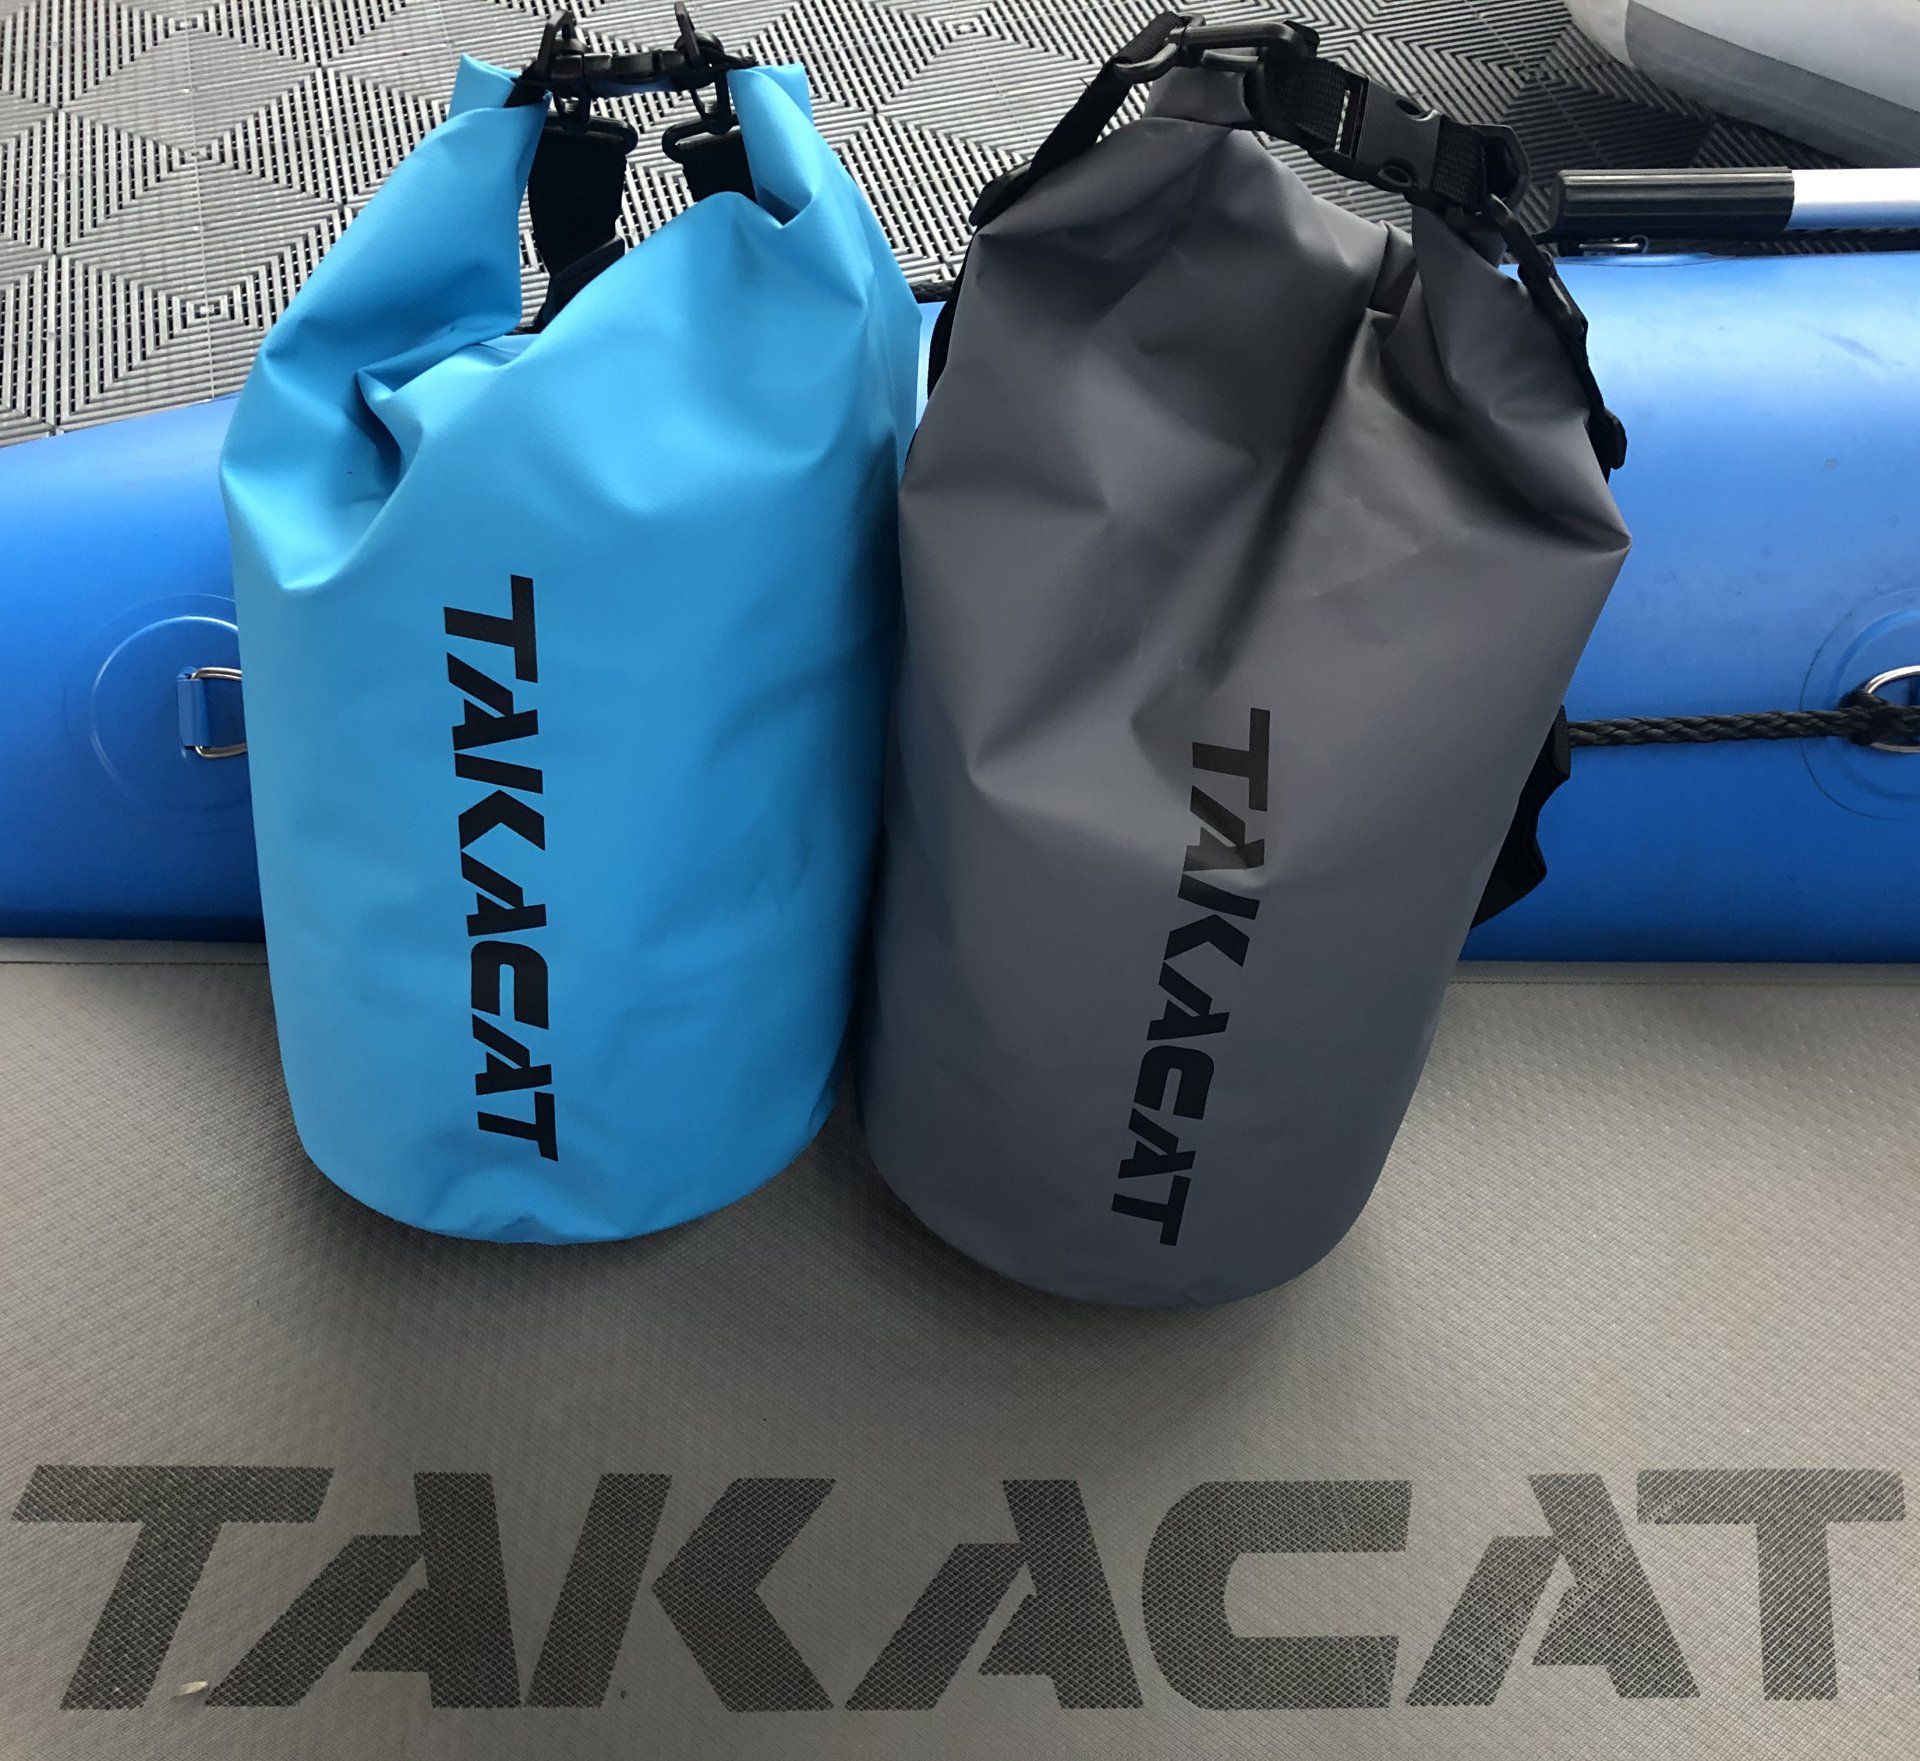 Le TAKACAT-BAG protège contre la pluie, l'humidité et les éclaboussures d'eau.